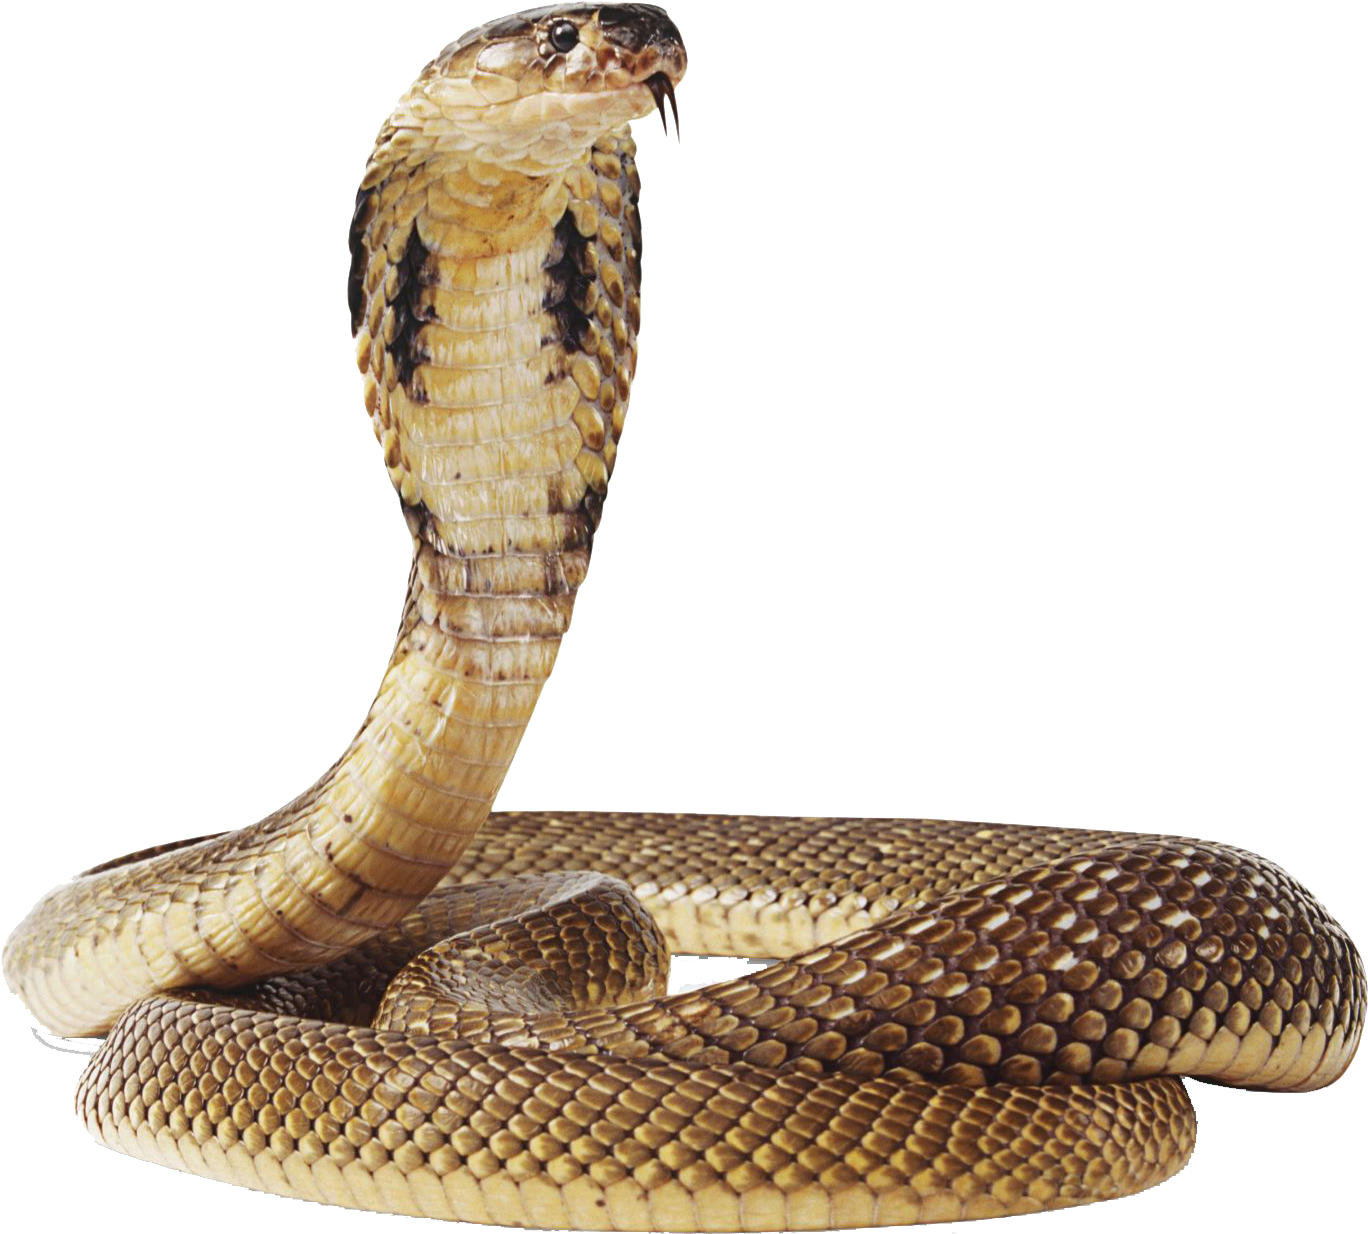 Cobra Snake Png Transparent Image - Snake Png (1399x1248), Png Download